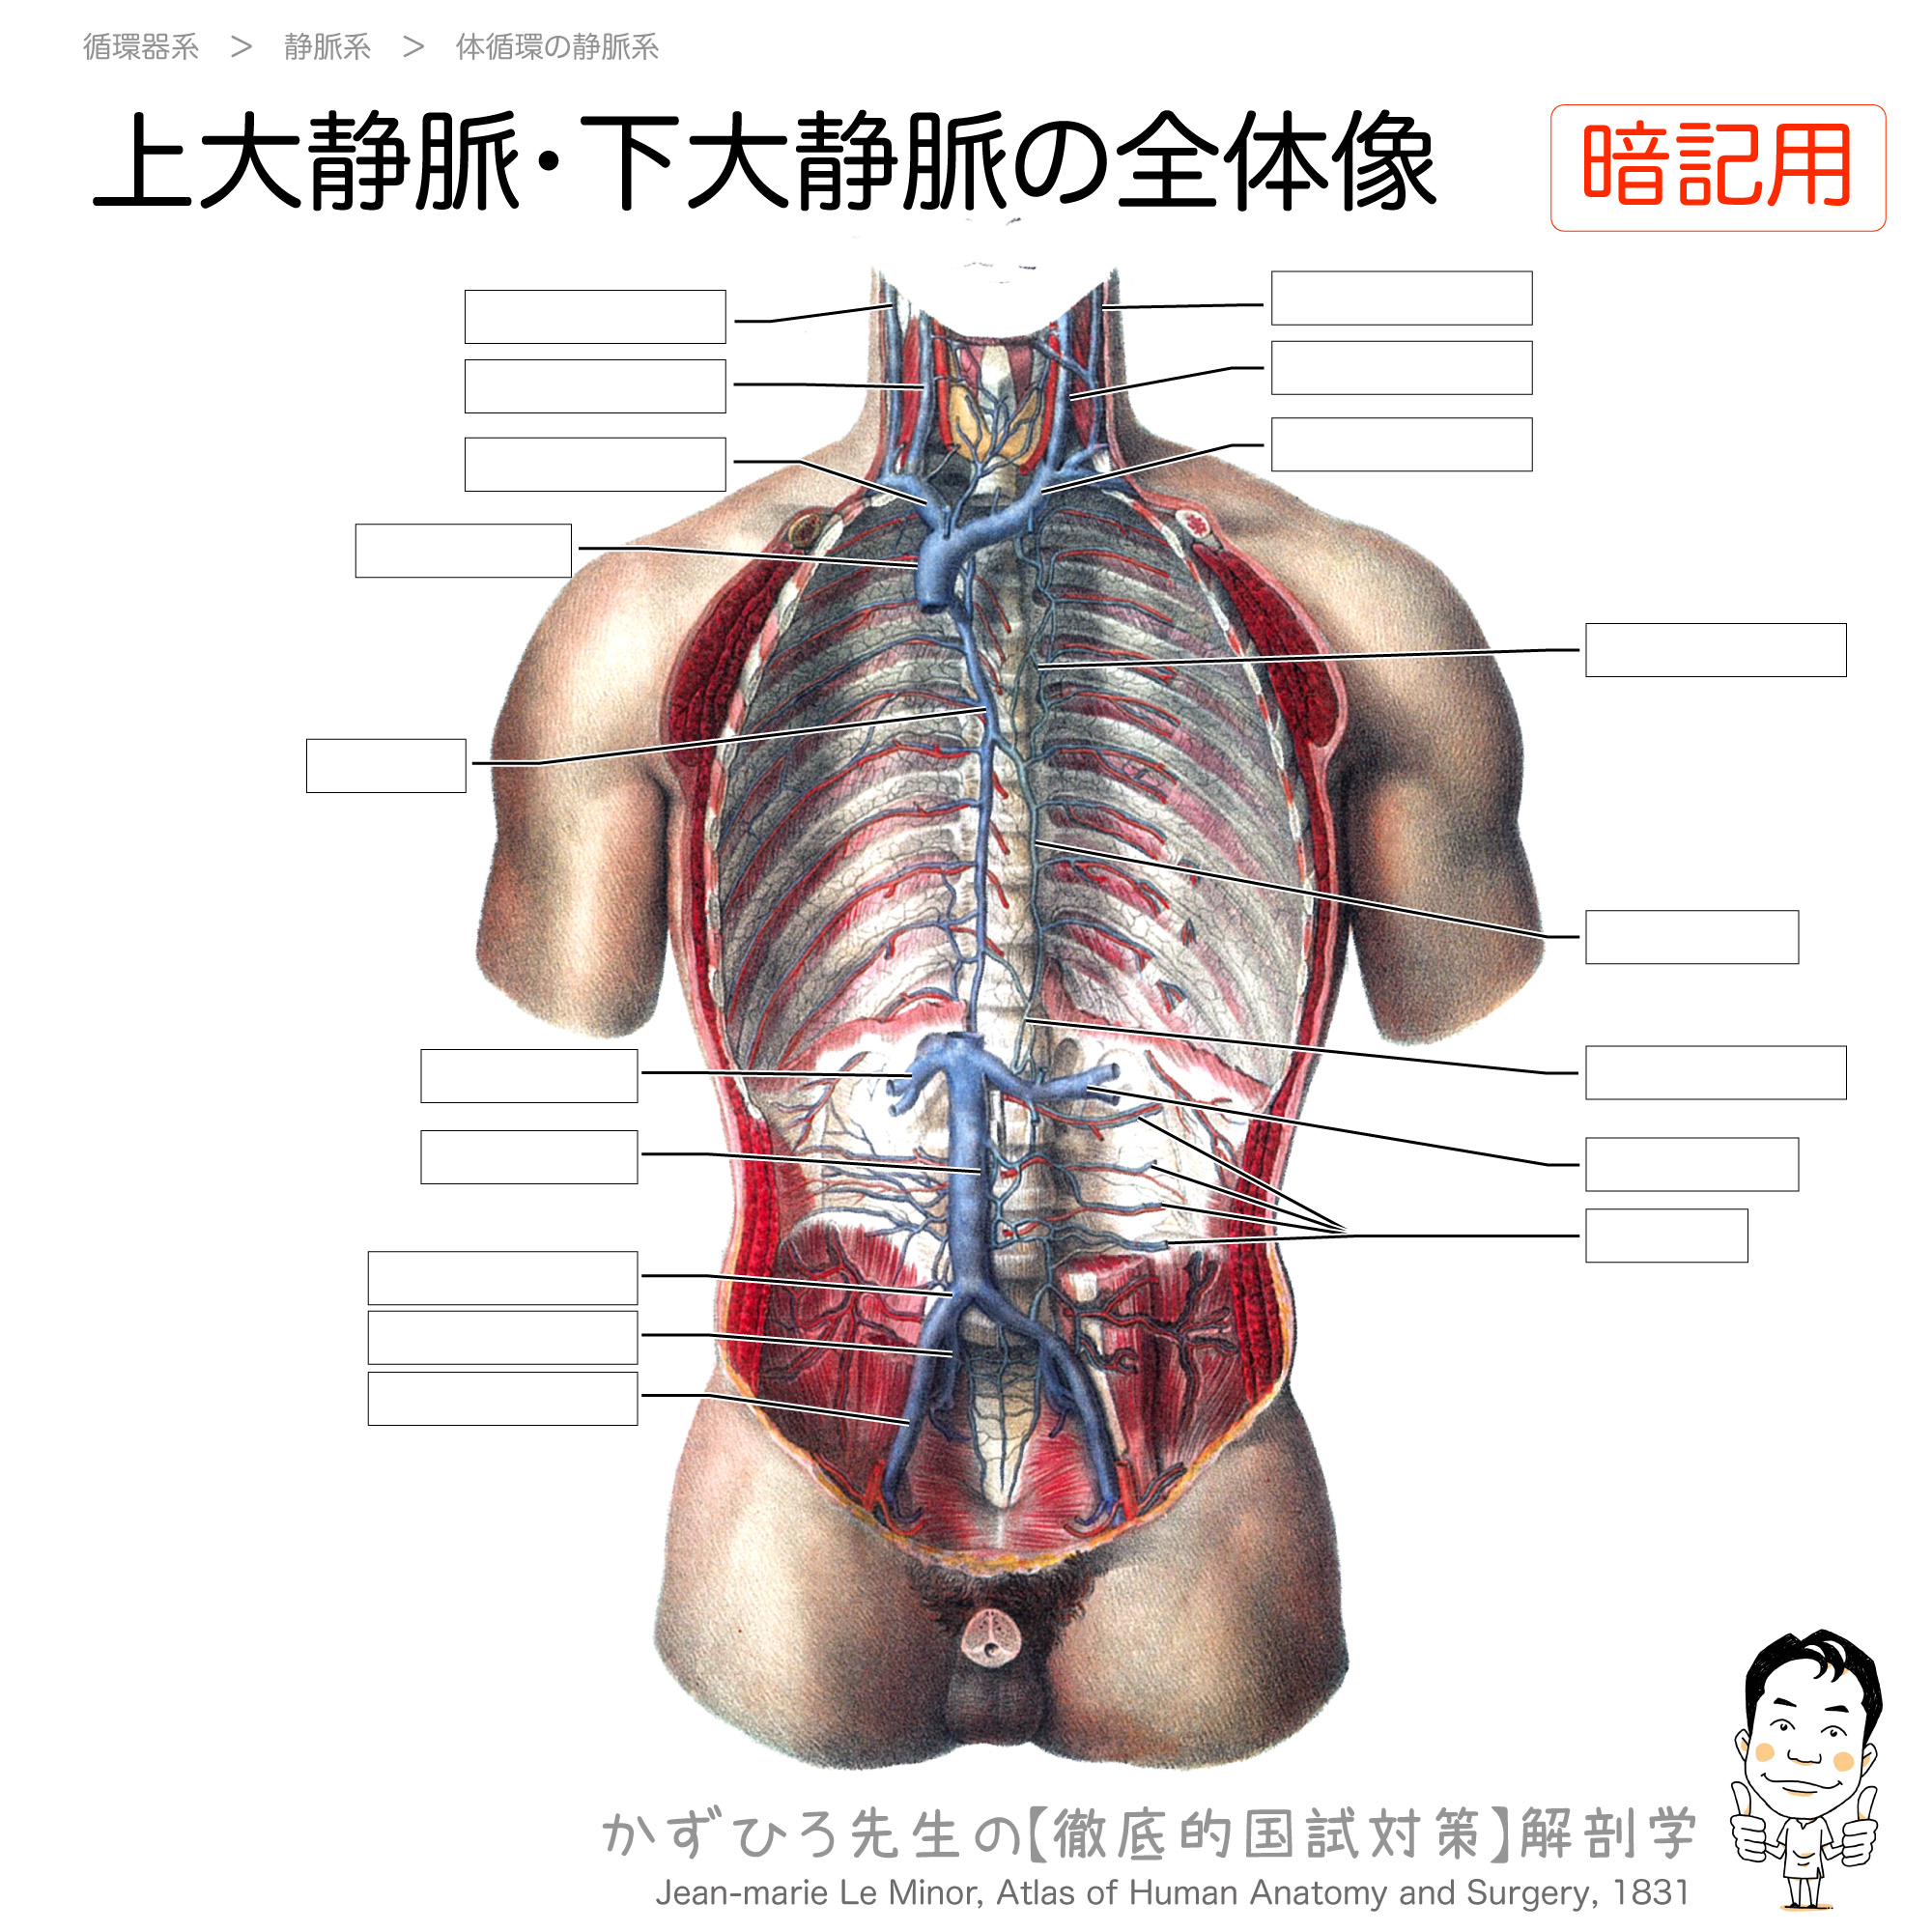 上大静脈 下大静脈の全体像 徹底的解剖学